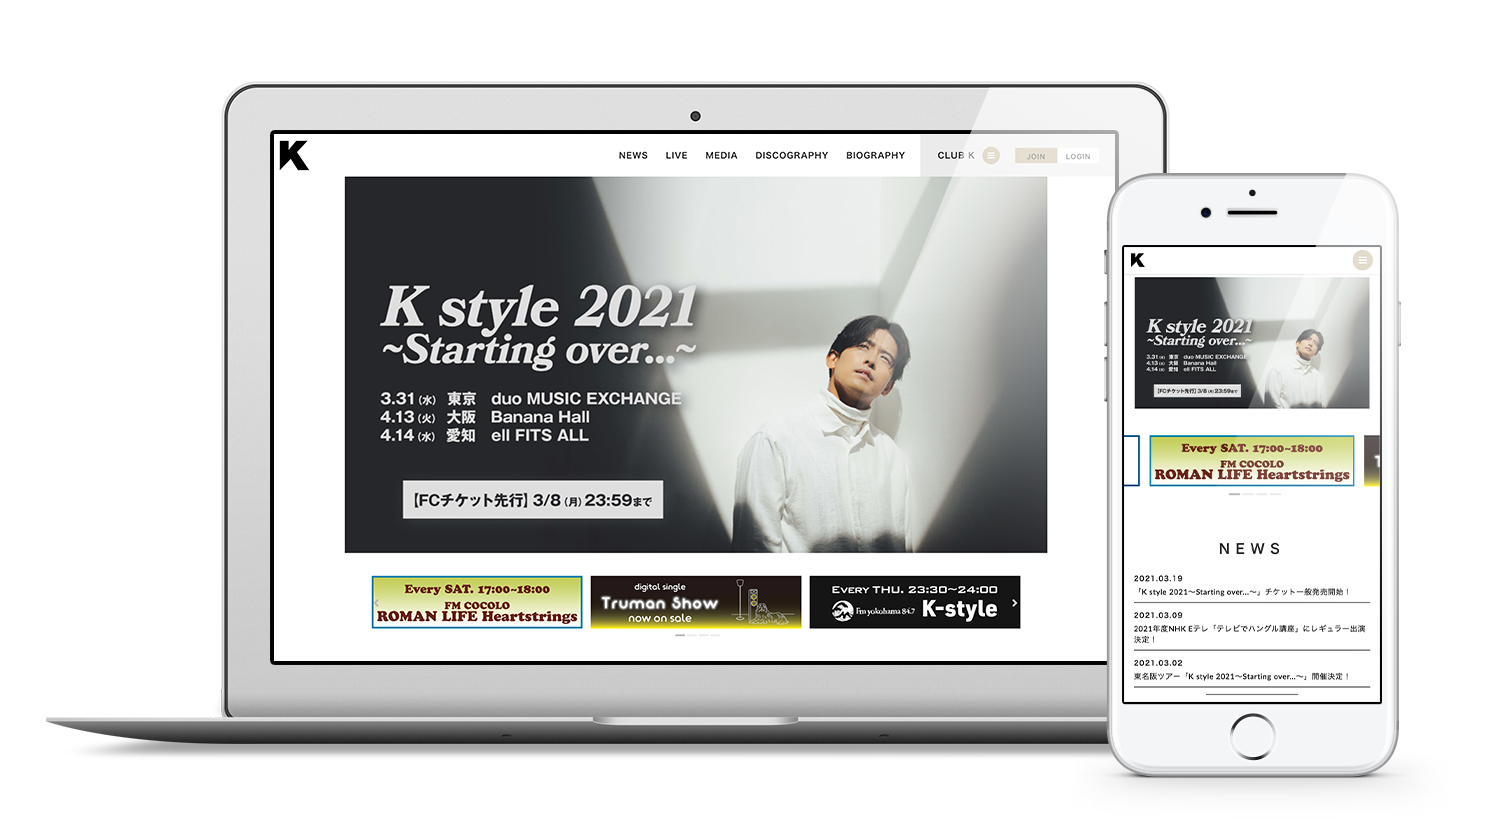 韓国ソウル出身のシンガーソングライター K の公式ファンクラブをリニューアル 株式会社skiyaki ファンサイト ファンクラブ ストアサイト運営